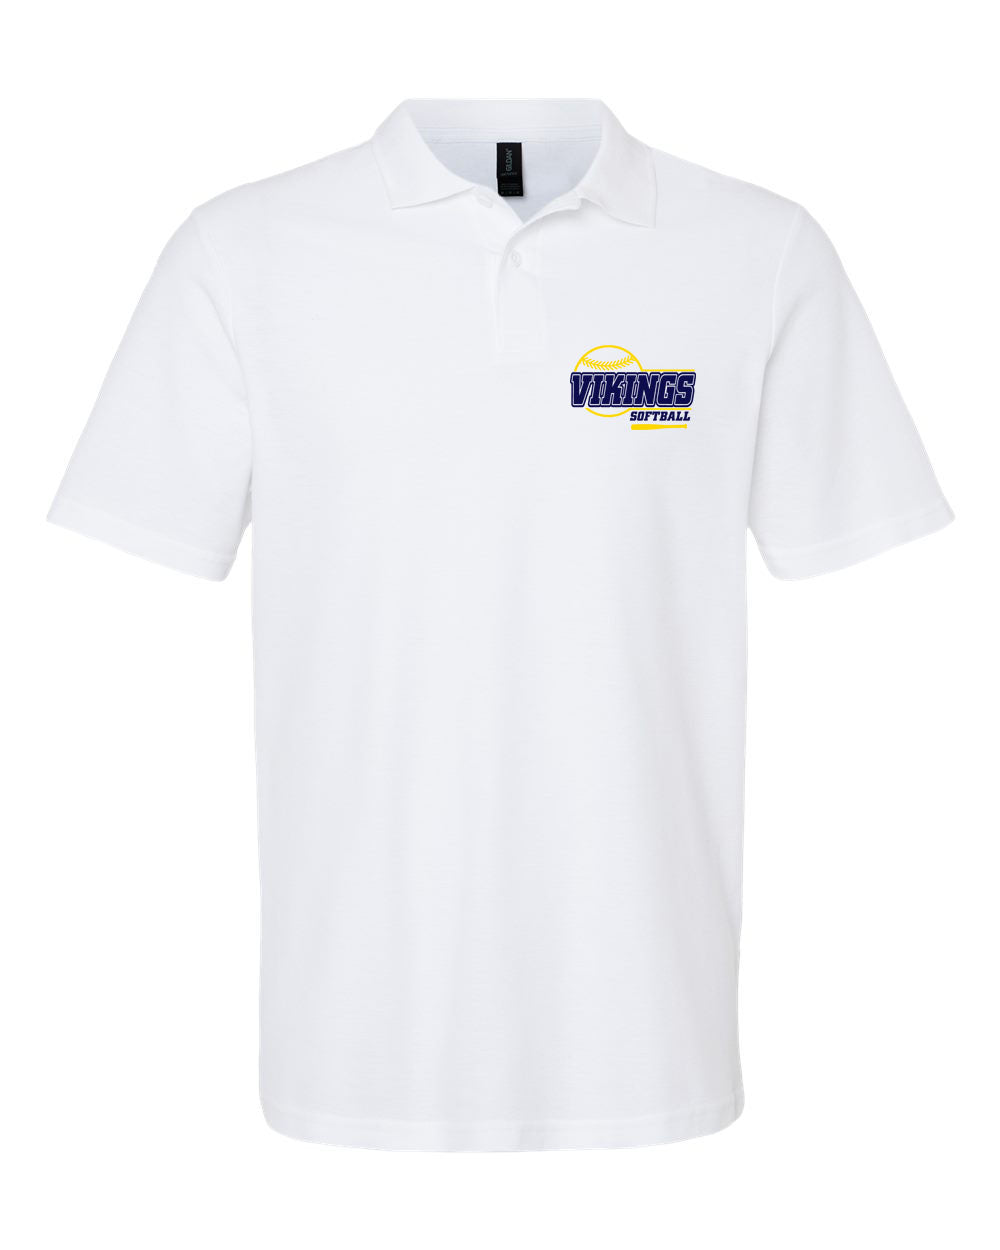 Vernon Softball Design 1 Polo T-Shirt